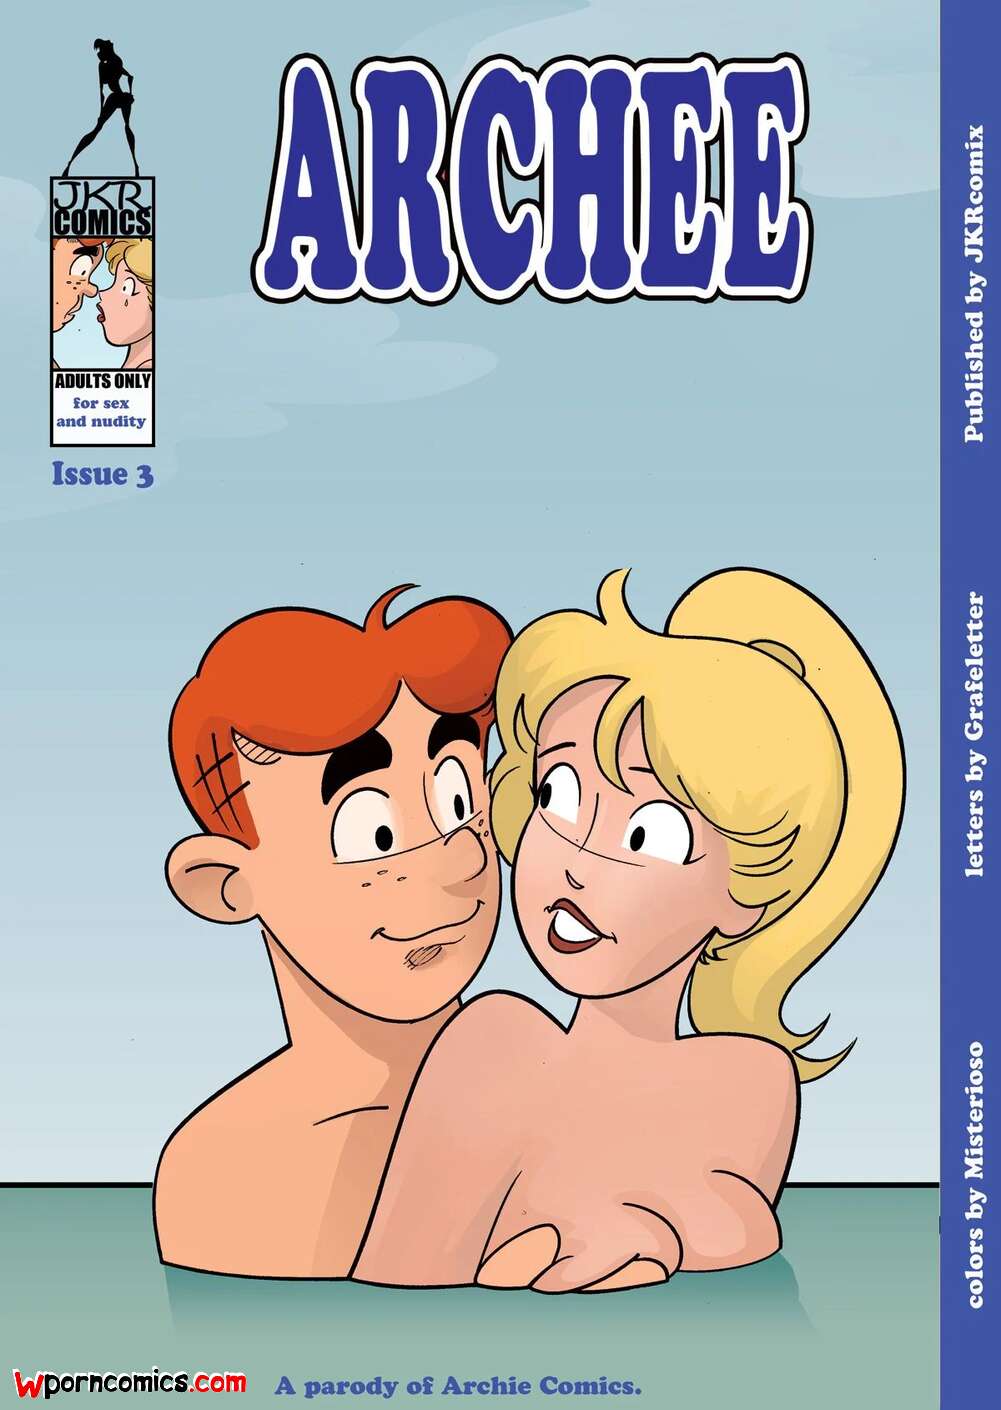 Archie Cartoon Nude - âœ…ï¸ Porn comic Archee. Chapter 3. Archies. JKRComix. Sex comic boy went with  | Porn comics in English for adults only | sexkomix2.com